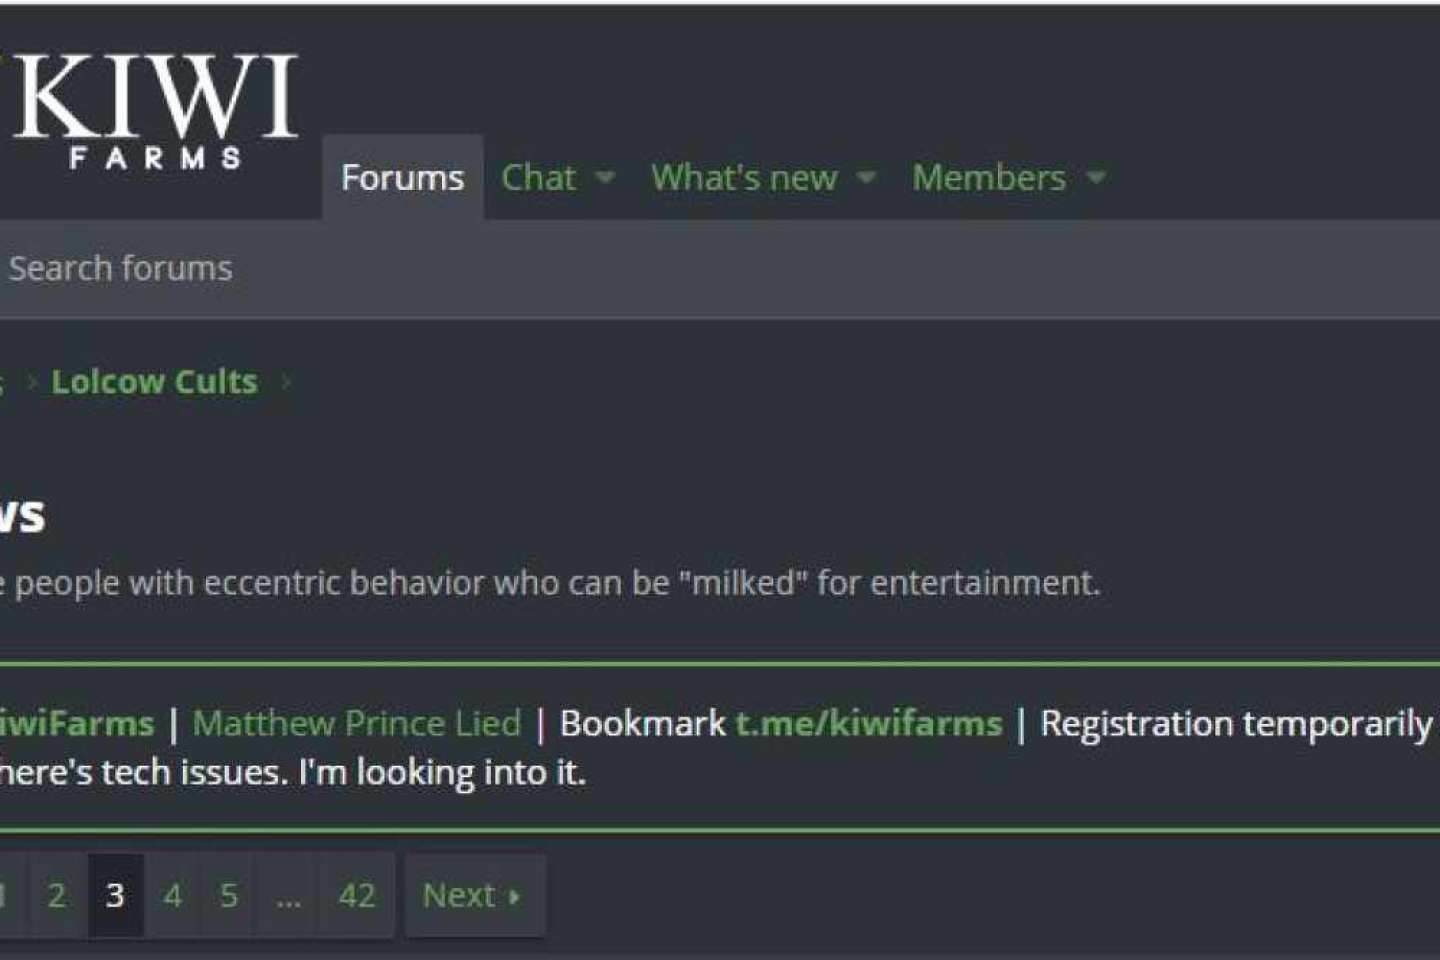 Le forum Kiwi Farms hors ligne à cause d’un piratage